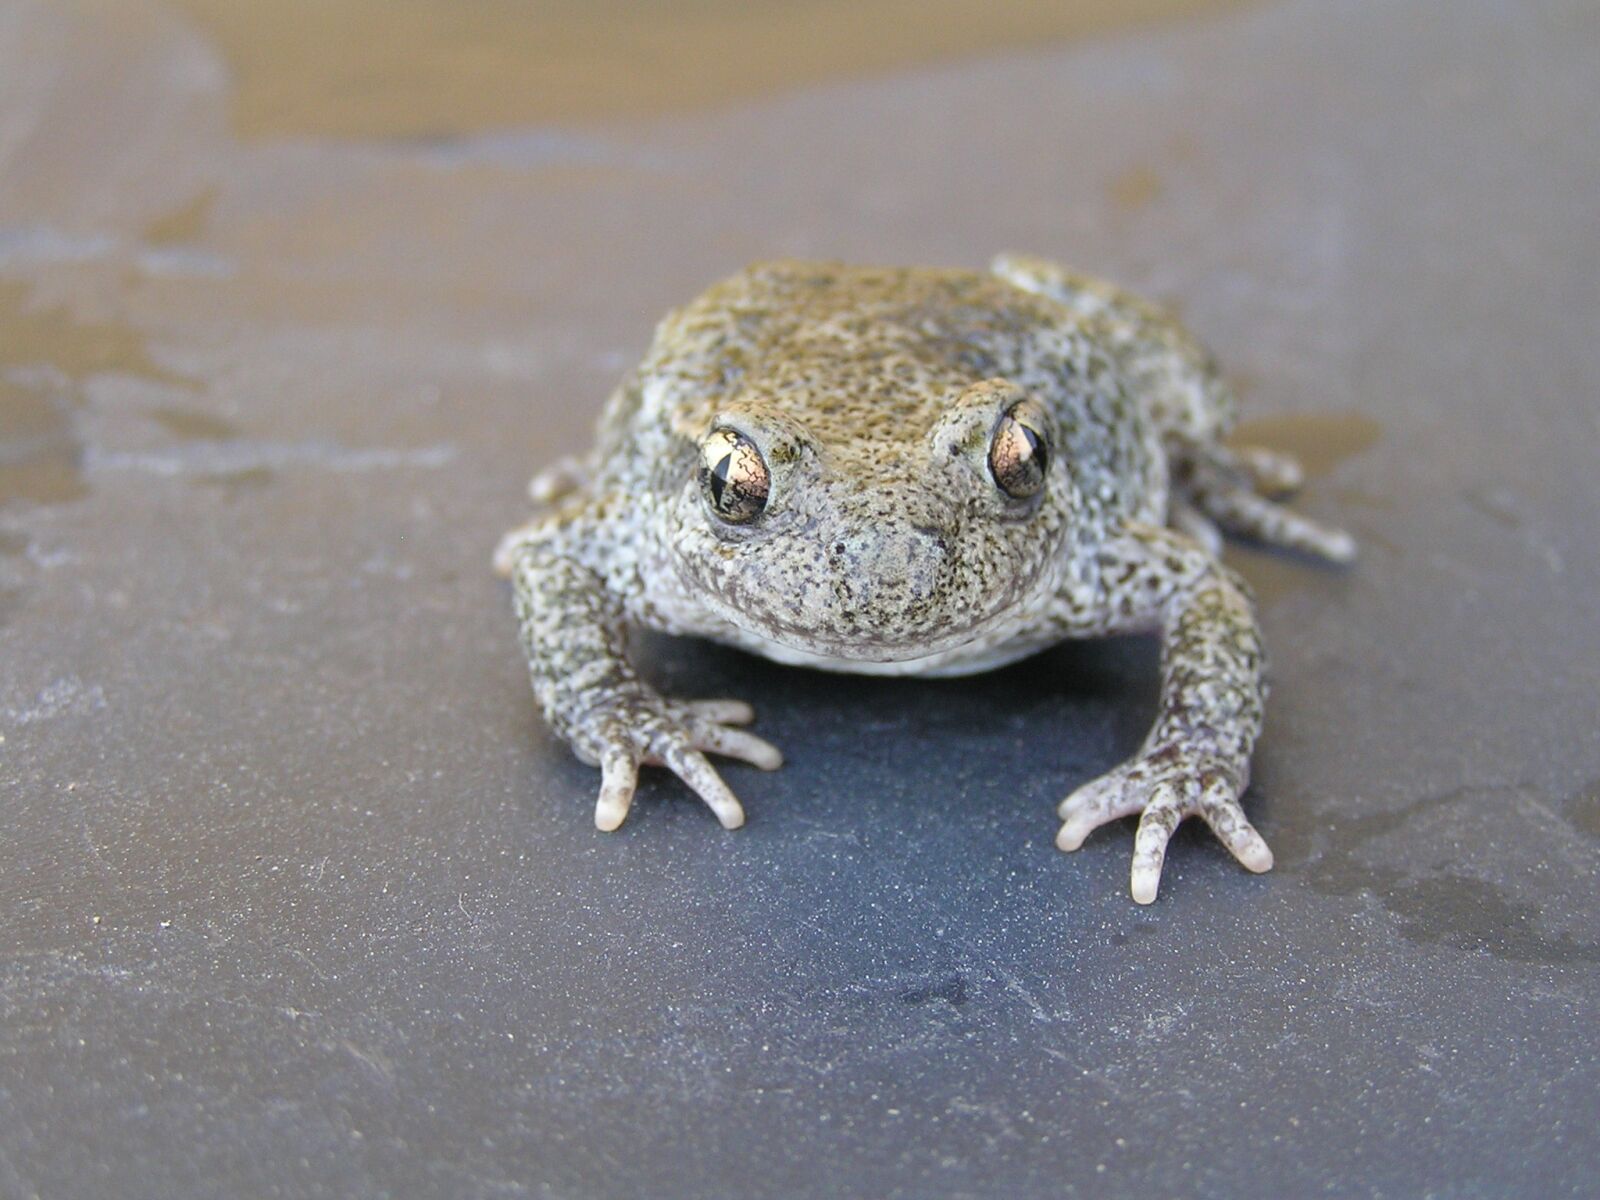 Olympus C760UZ sample photo. Toad, frog mottled, amphibious photography